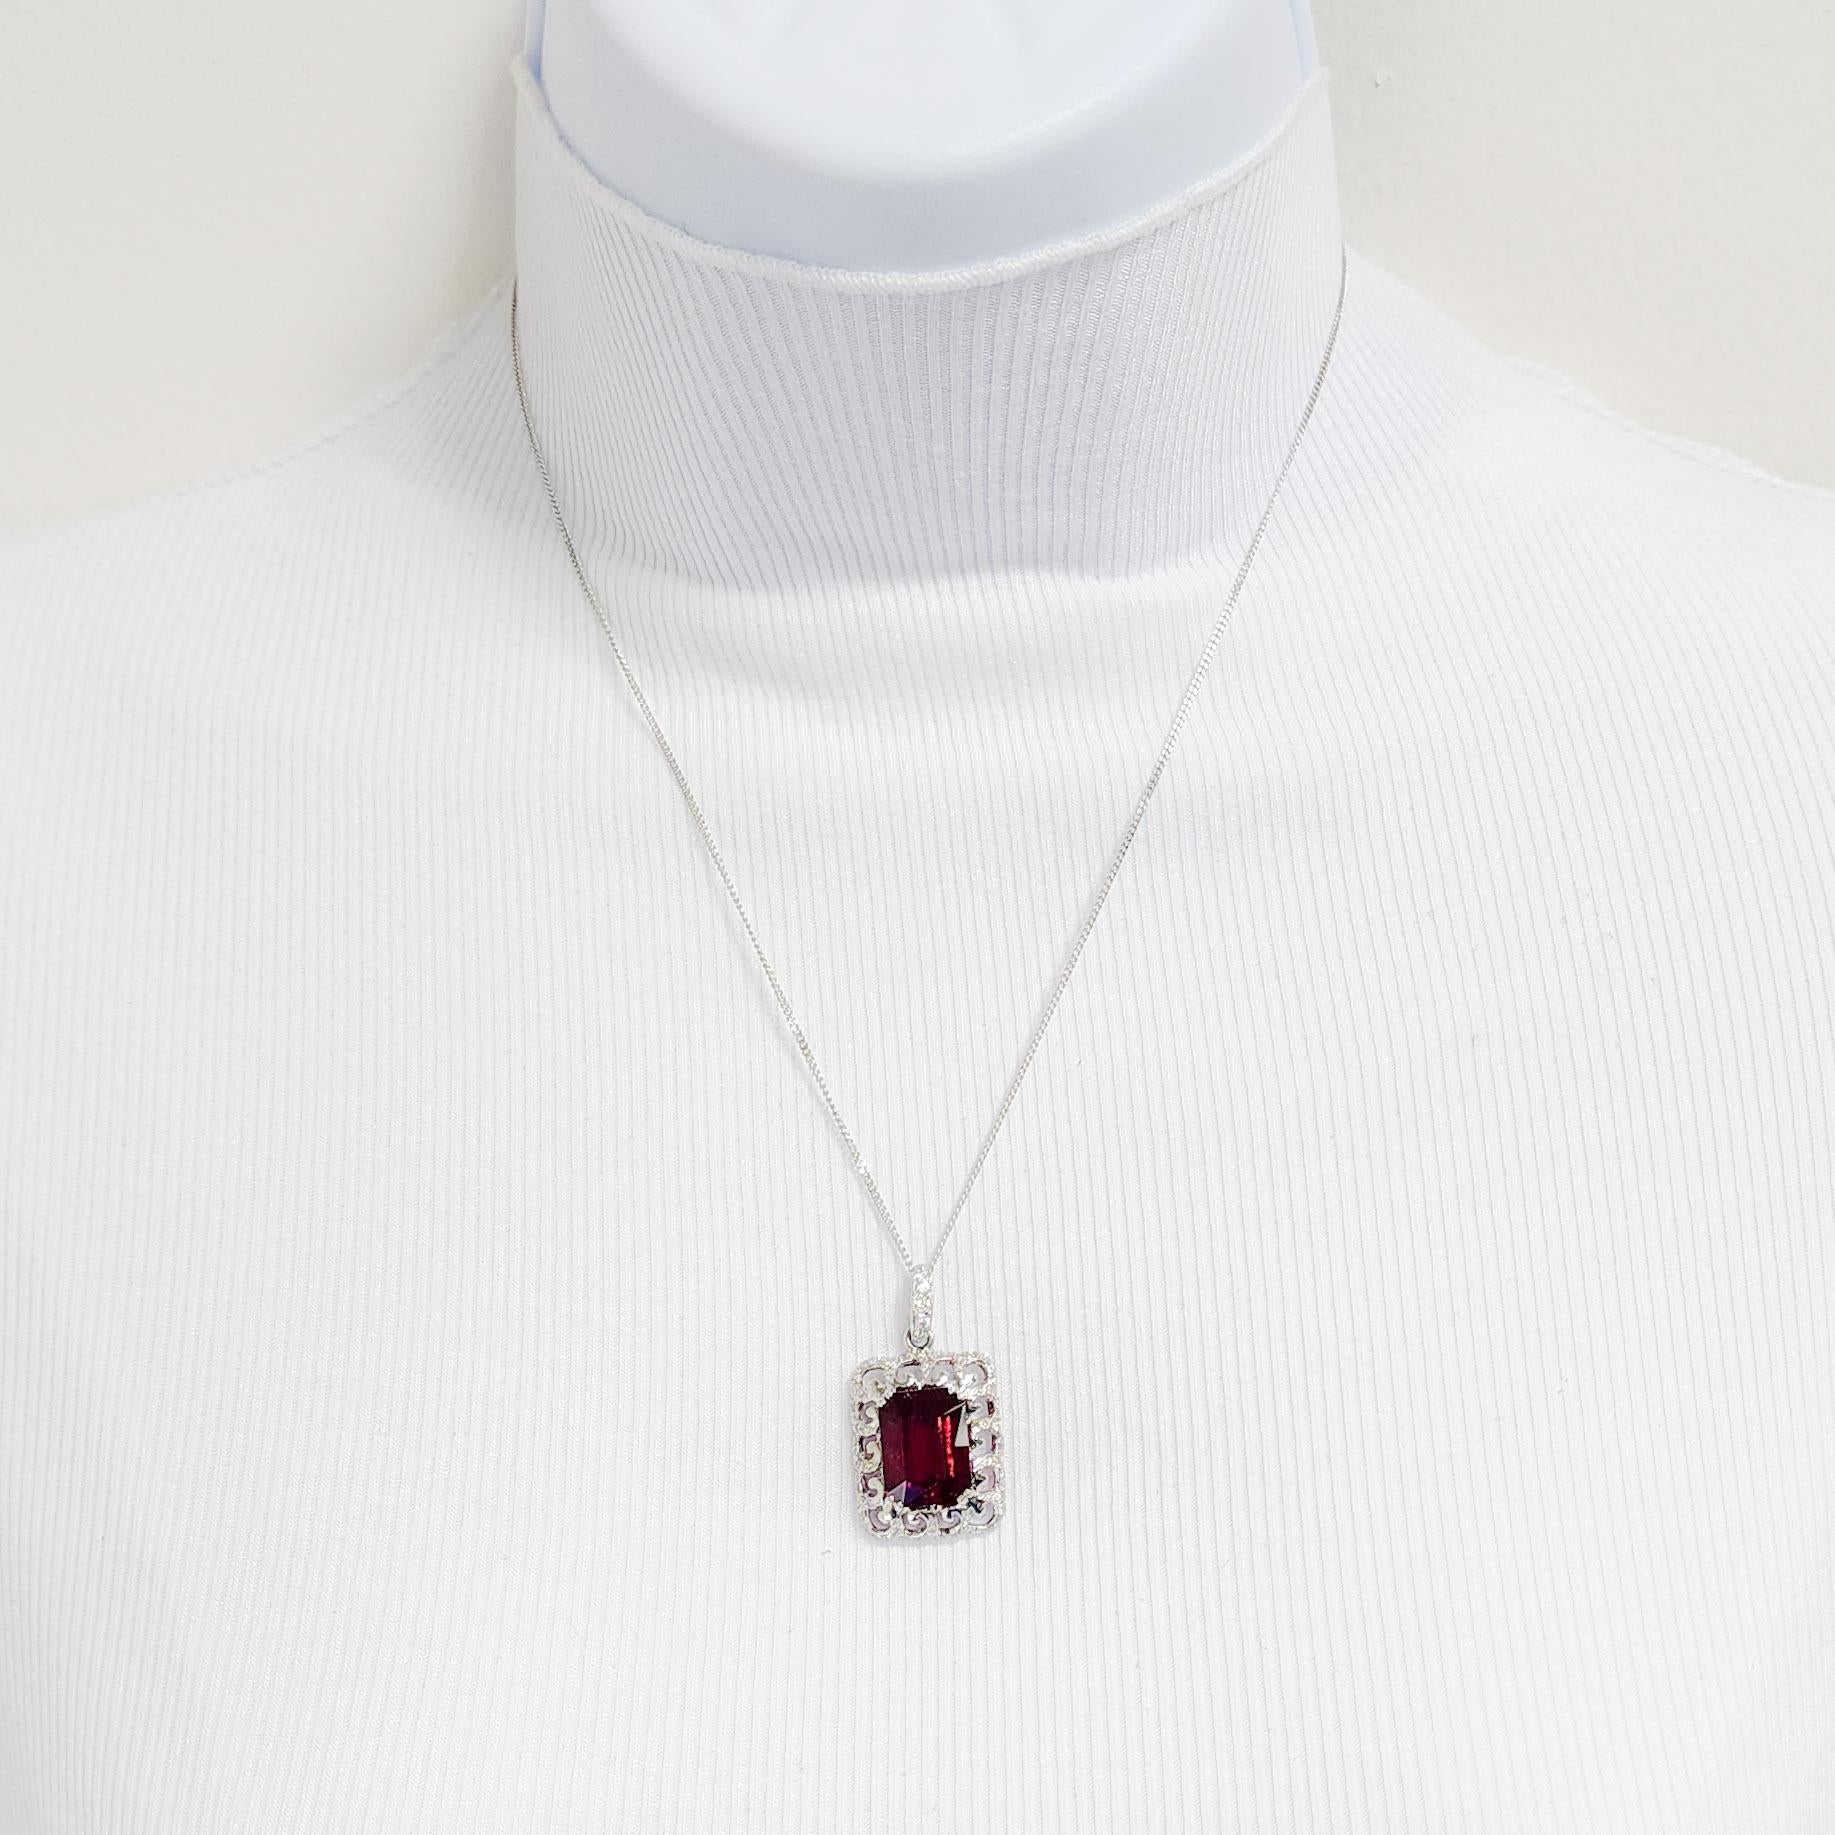 Rubellite Emerald Cut and White Diamond Pendant Necklace in 18k For Sale 1